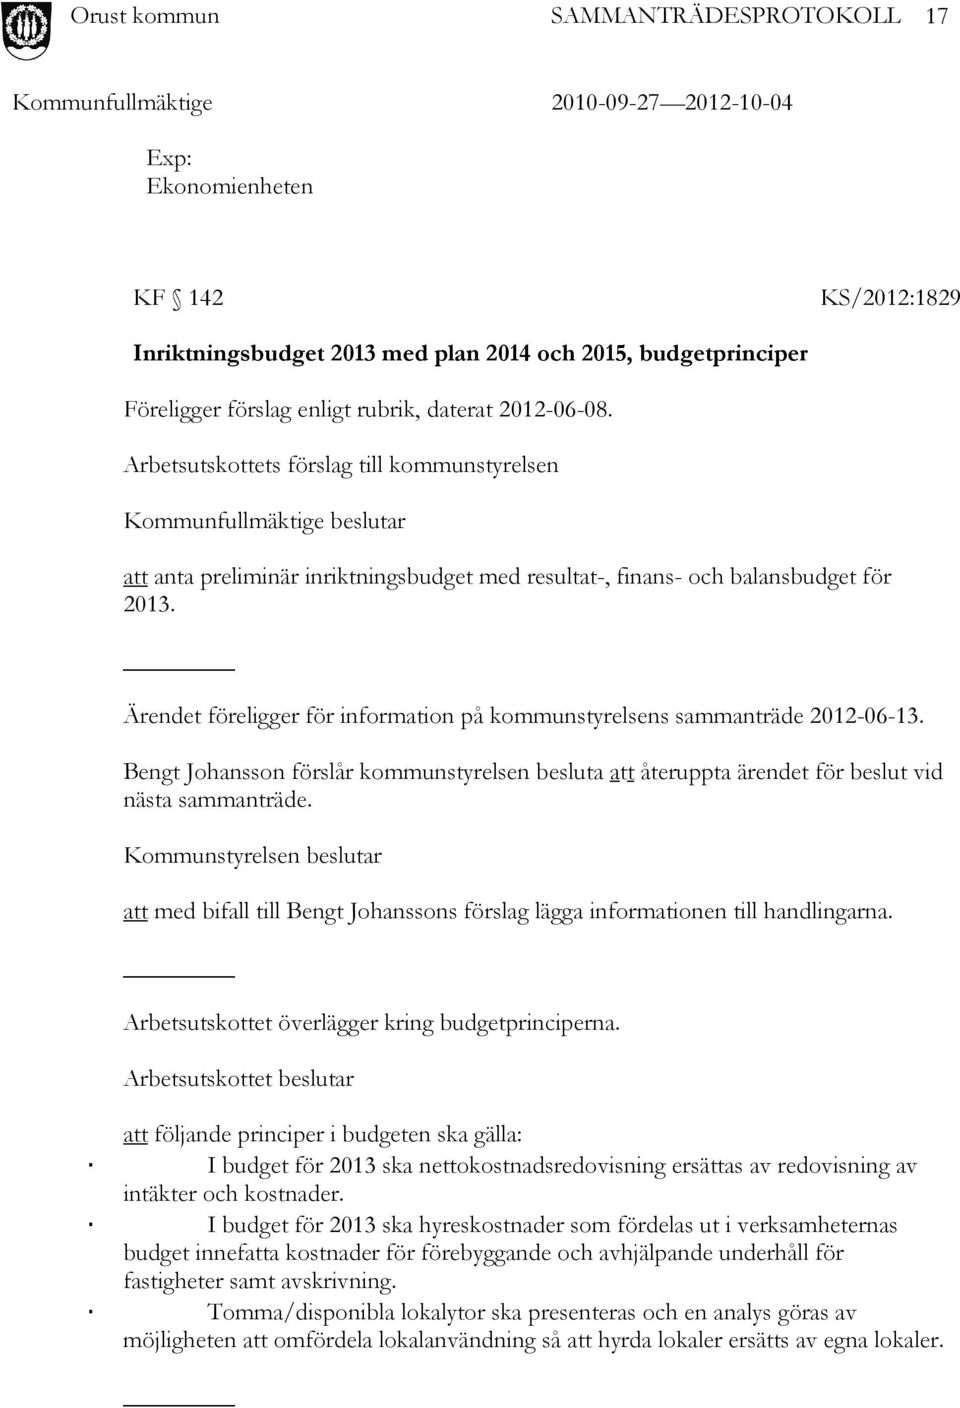 Ärendet föreligger för information på kommunstyrelsens sammanträde 2012-06-13. Bengt Johansson förslår kommunstyrelsen besluta att återuppta ärendet för beslut vid nästa sammanträde.